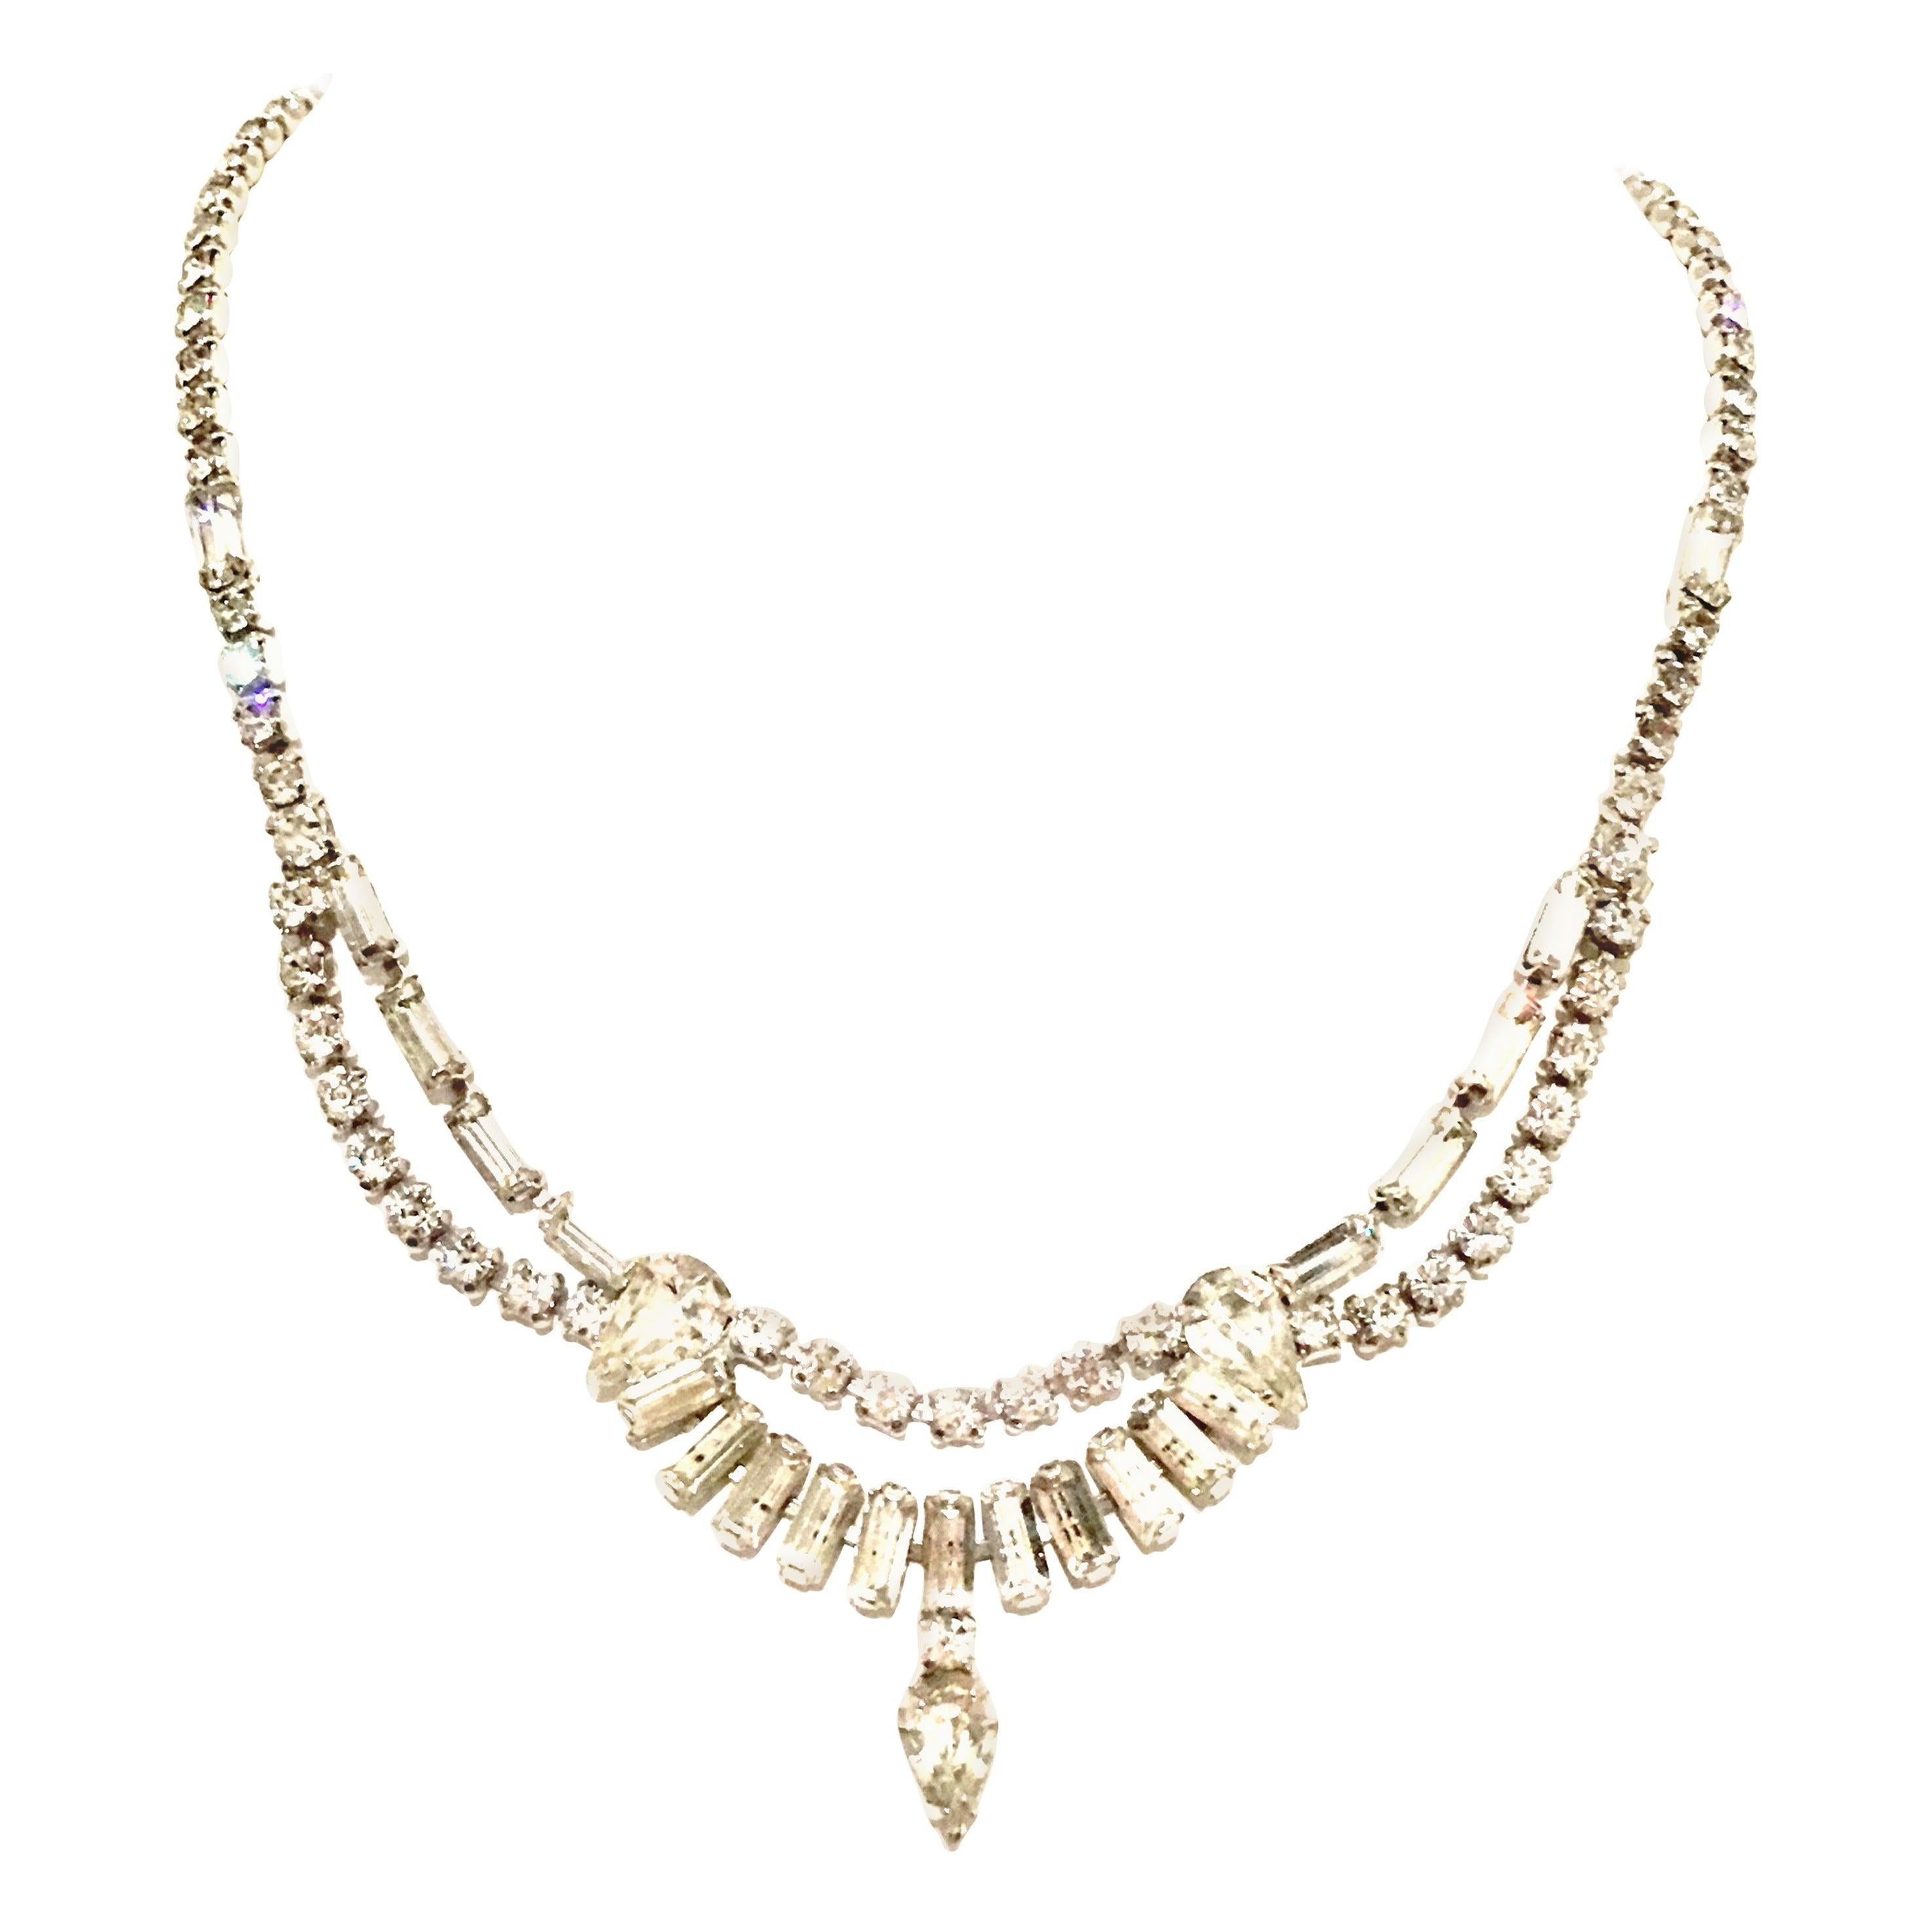 1960'S Silver & Swarovski Crystal Choker Style Necklace By, Kramer Of New York